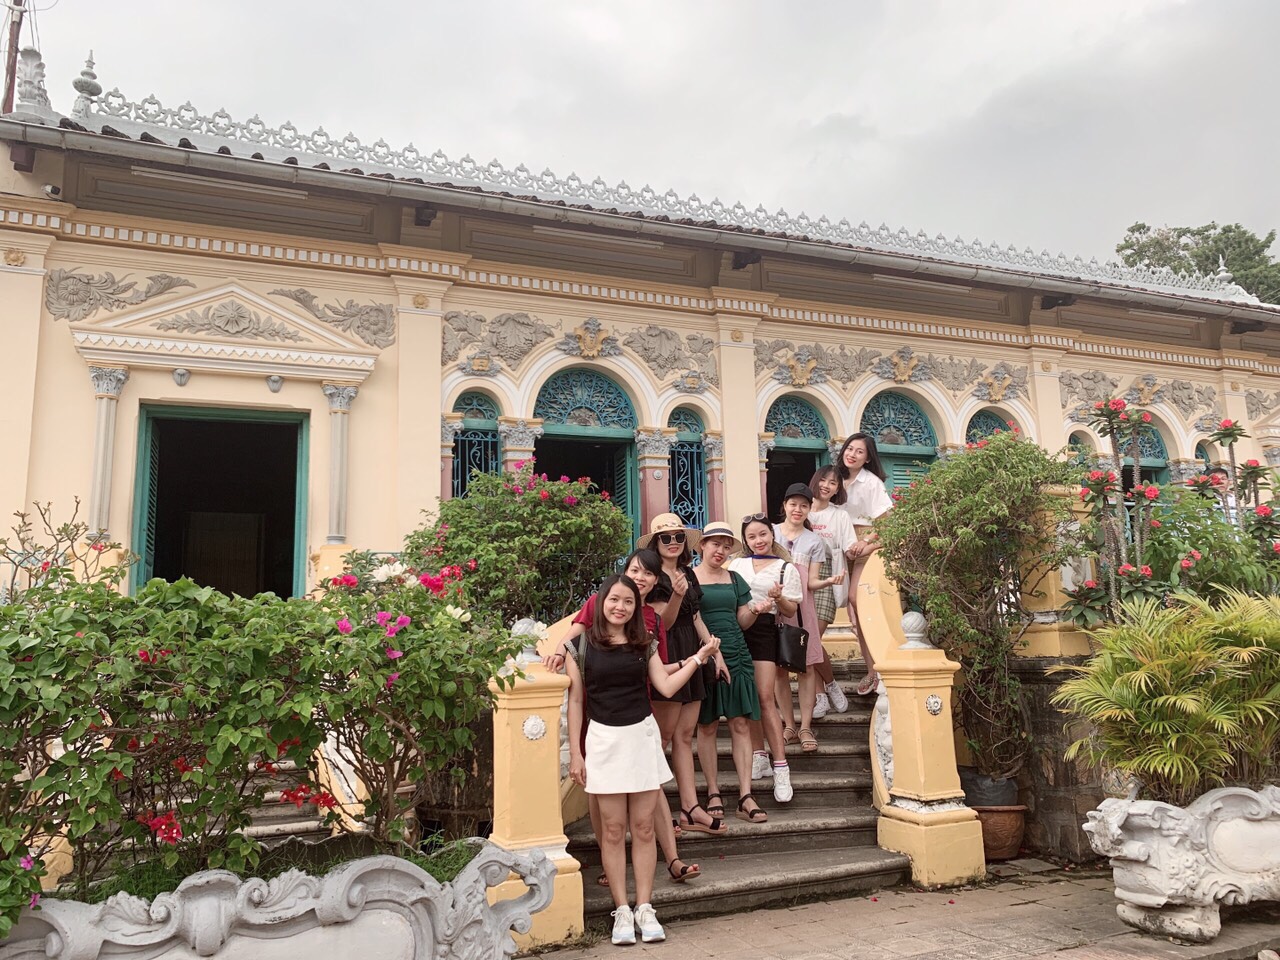 Tour du lịch Cần Thơ mùa Thu, tham quan Mỹ Tho - Cà Mau - Sóc Trăng 4 ngày từ Sài Gòn